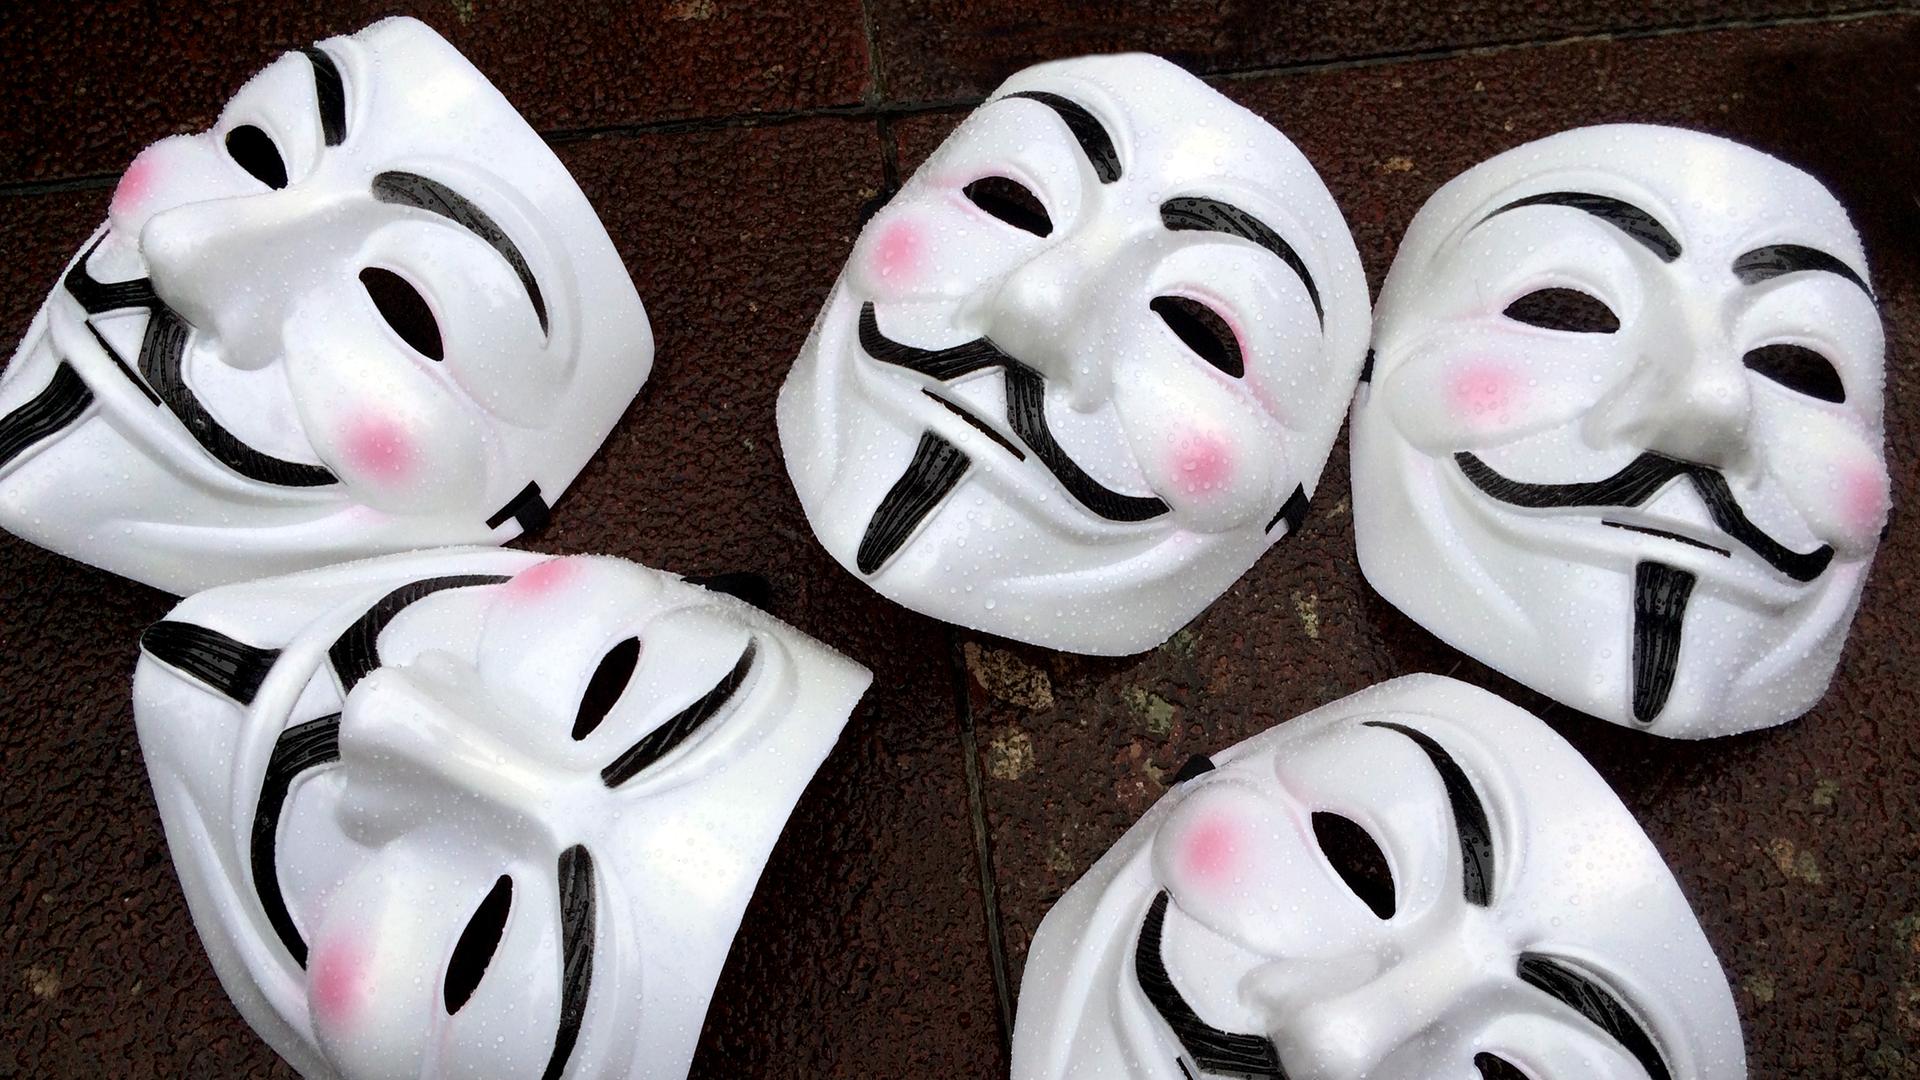 Fünf Guy Fawkes-Masken - weißes Gesicht mit schwarzem Schnurrbart - liegen auf dem Boden. Die Masken sind das Markenzeichen des Hackerkollektivs Anonymous.